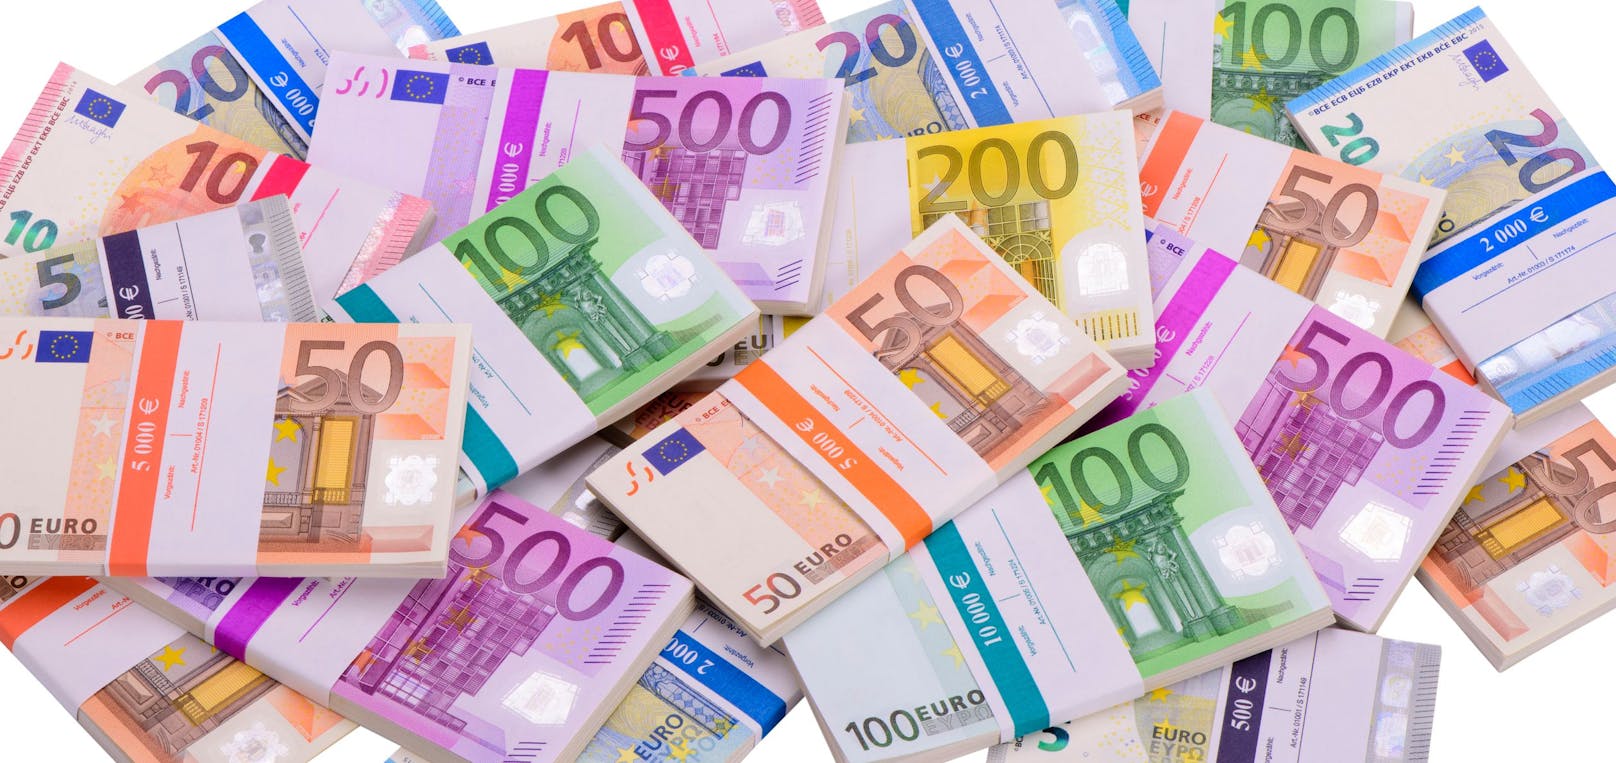 Neuer Bonus bringt 34.000 Euro – so wird er ausgezahlt